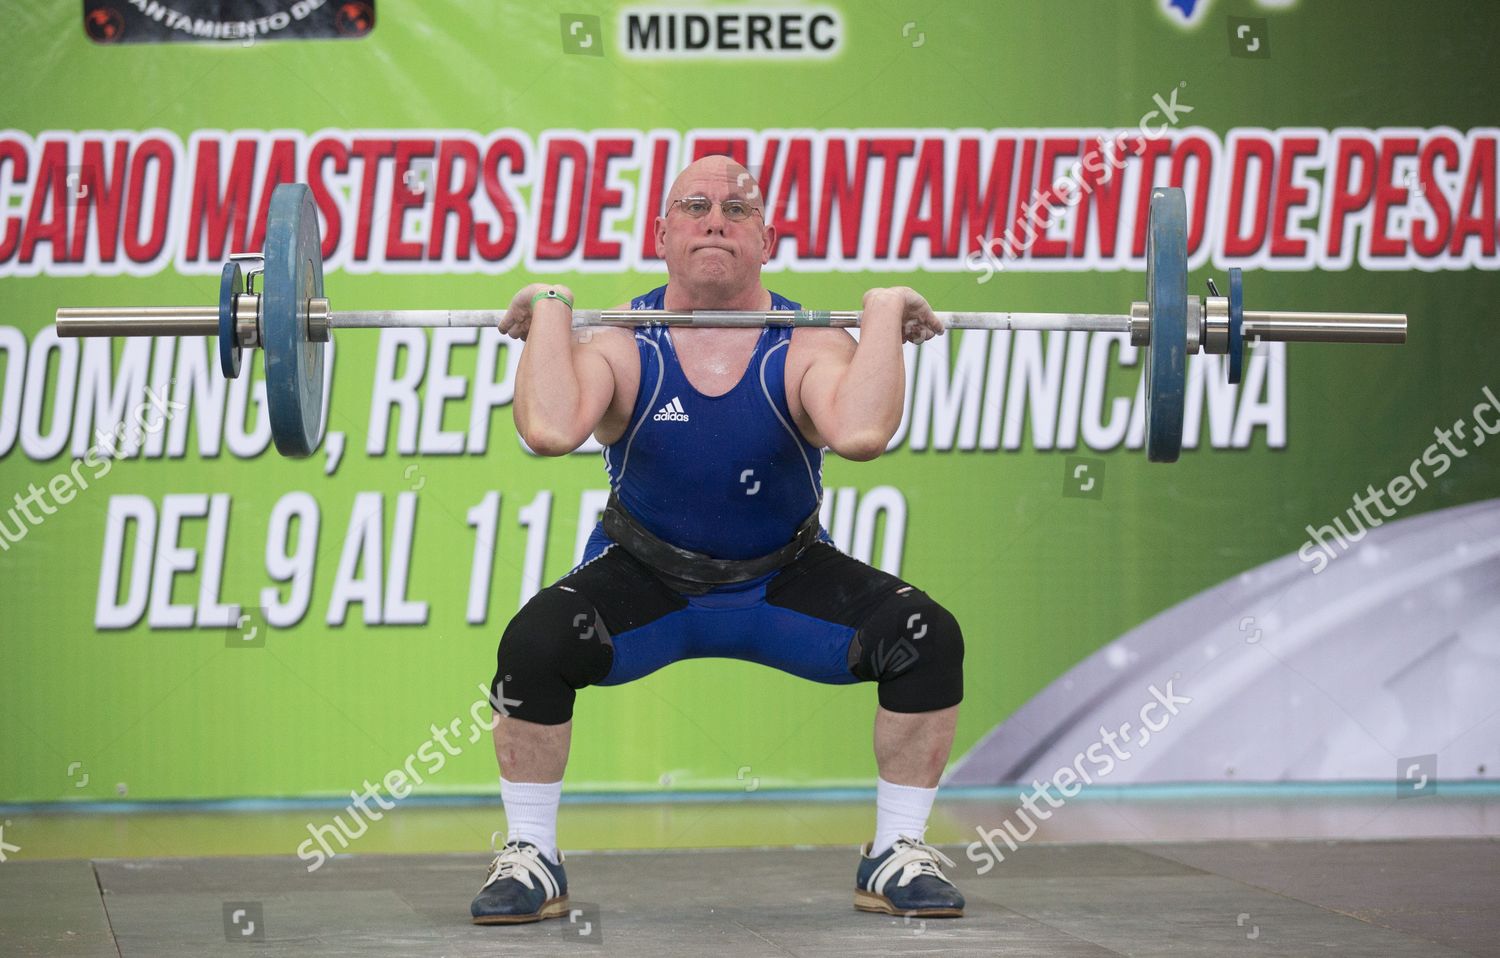 American masters weightlifting buddylio